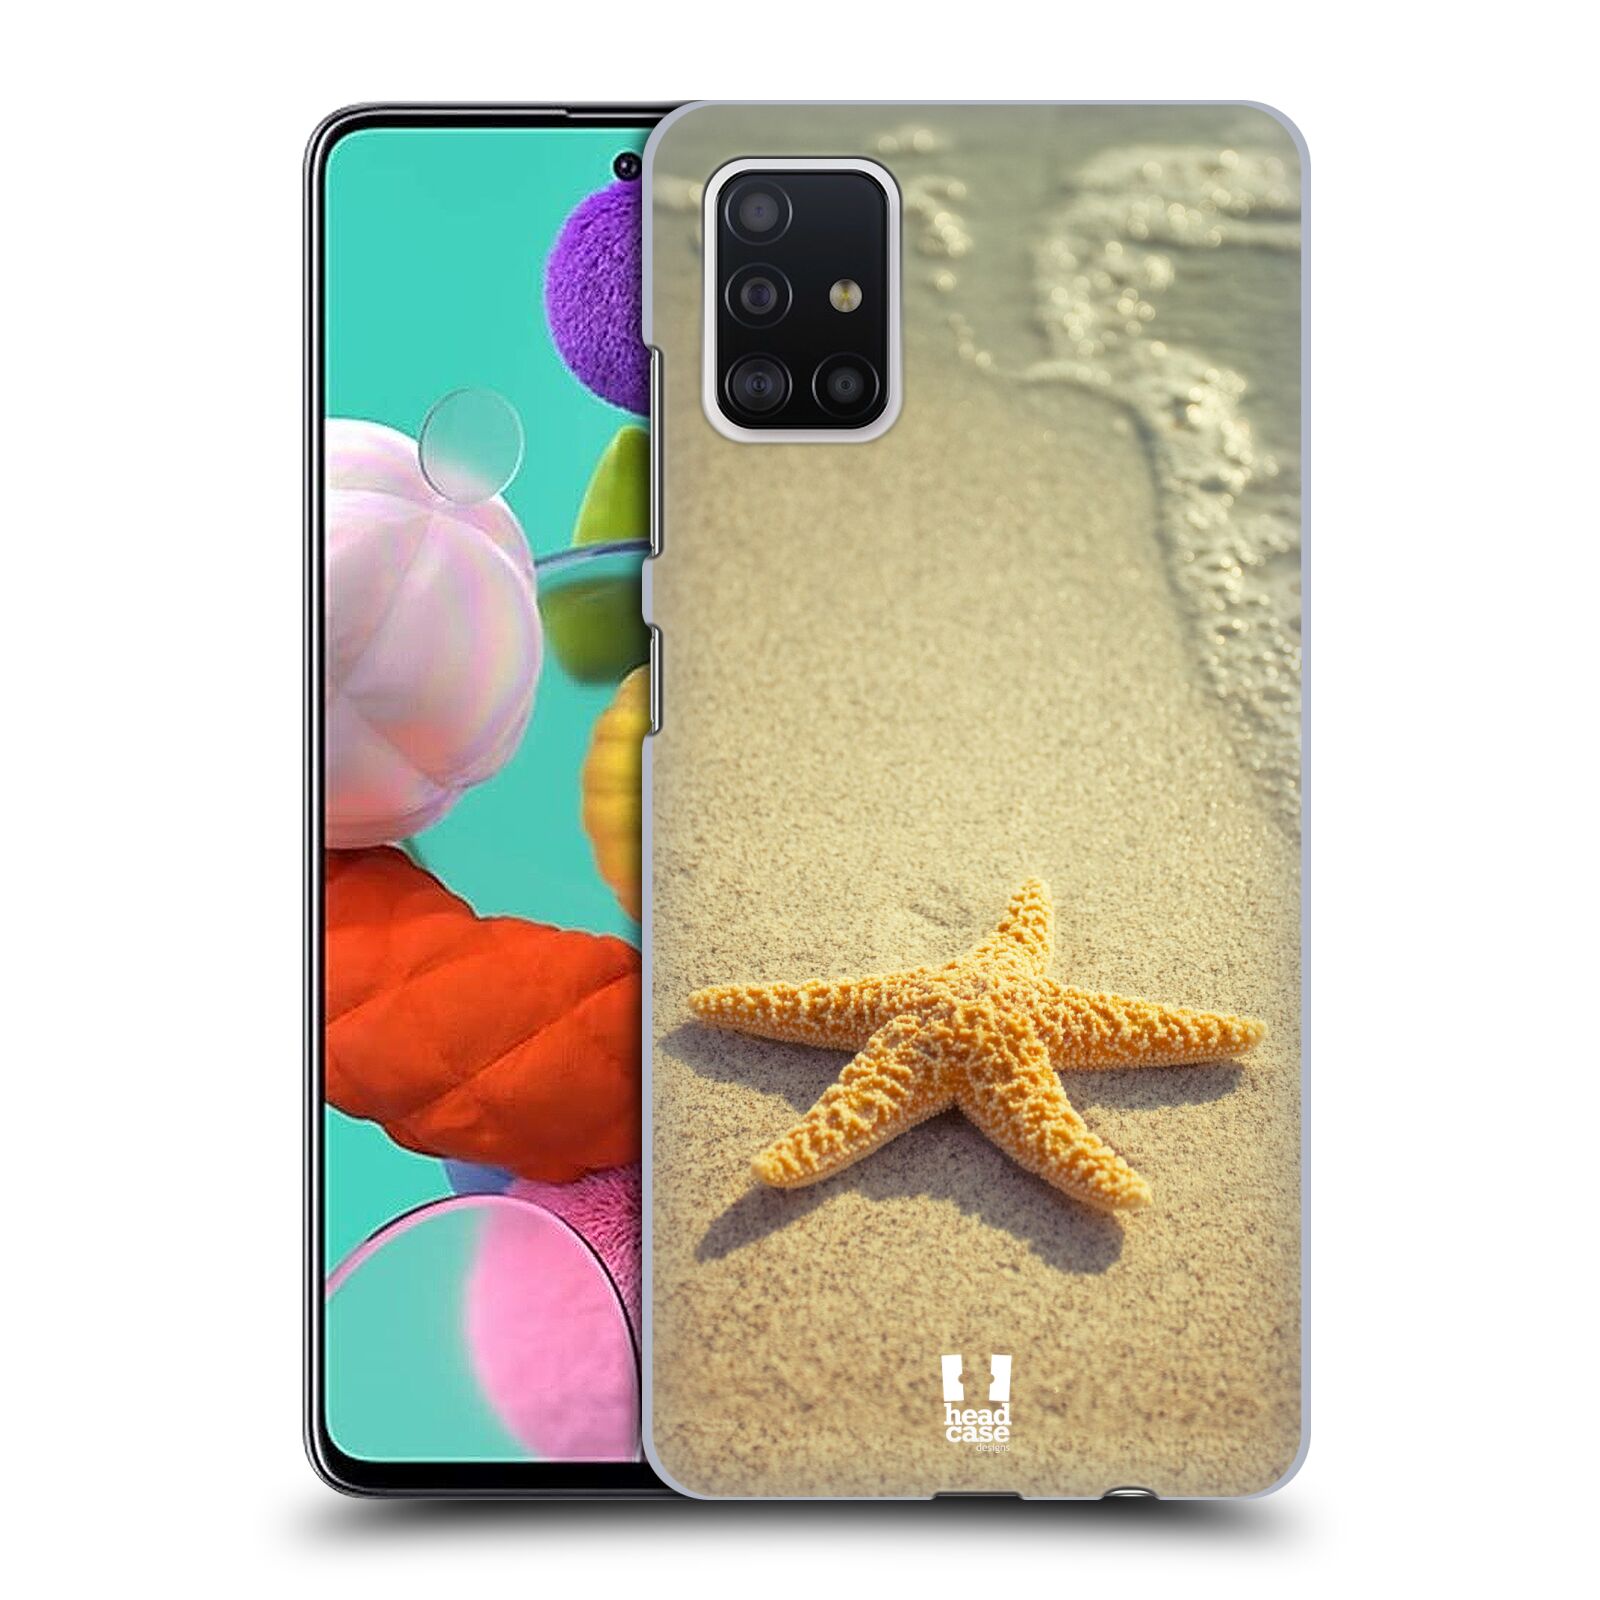 Pouzdro na mobil Samsung Galaxy A51 - HEAD CASE - vzor slavná zvířata foto hvězda na břehu